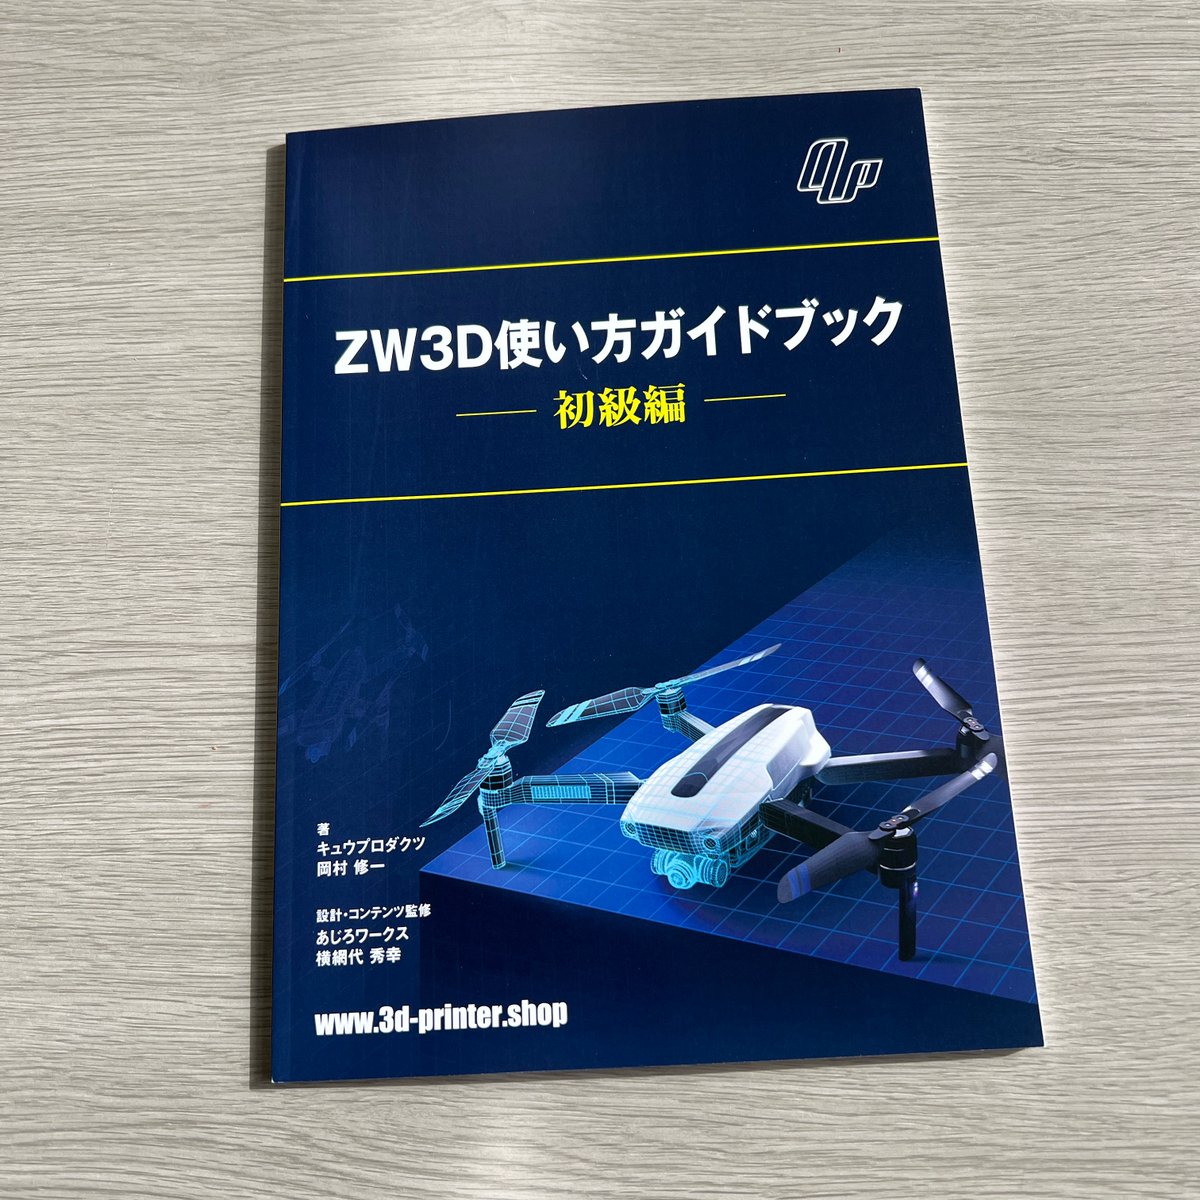 日本での教材が少ない中、ガイドブックが販売開始されました！

初級者に向けた教則本「ZW3D使い方ガイドブック-初級編-」１冊3300円（税込）で販売中
zw3d-jp.com/tutorial